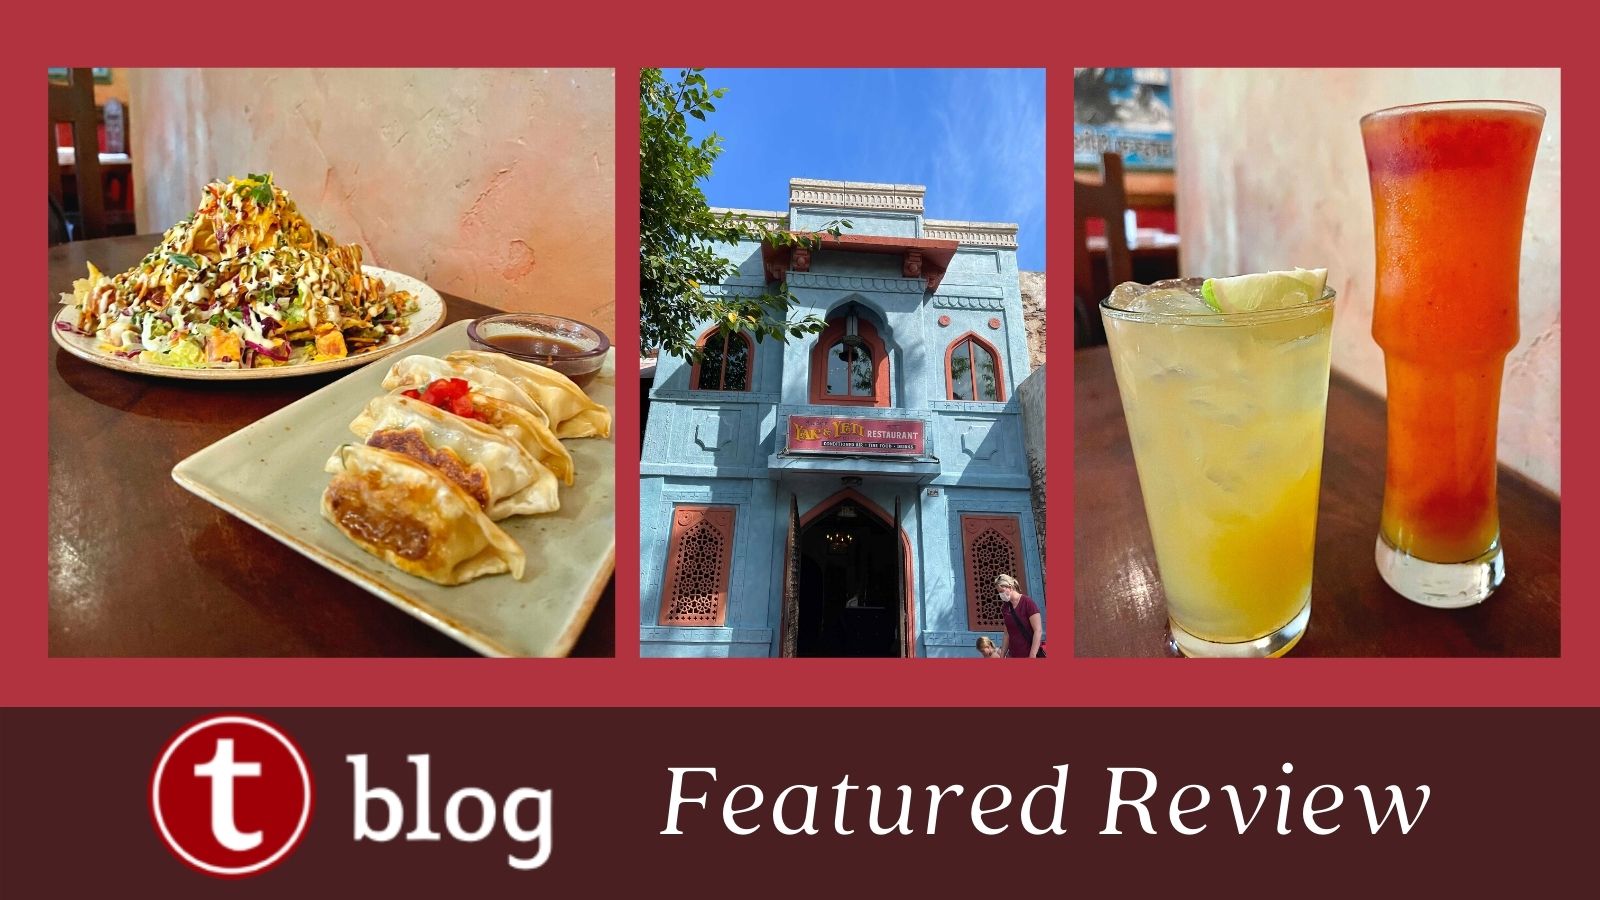 MickeyBlog Restaurant Review: Yak & Yeti 